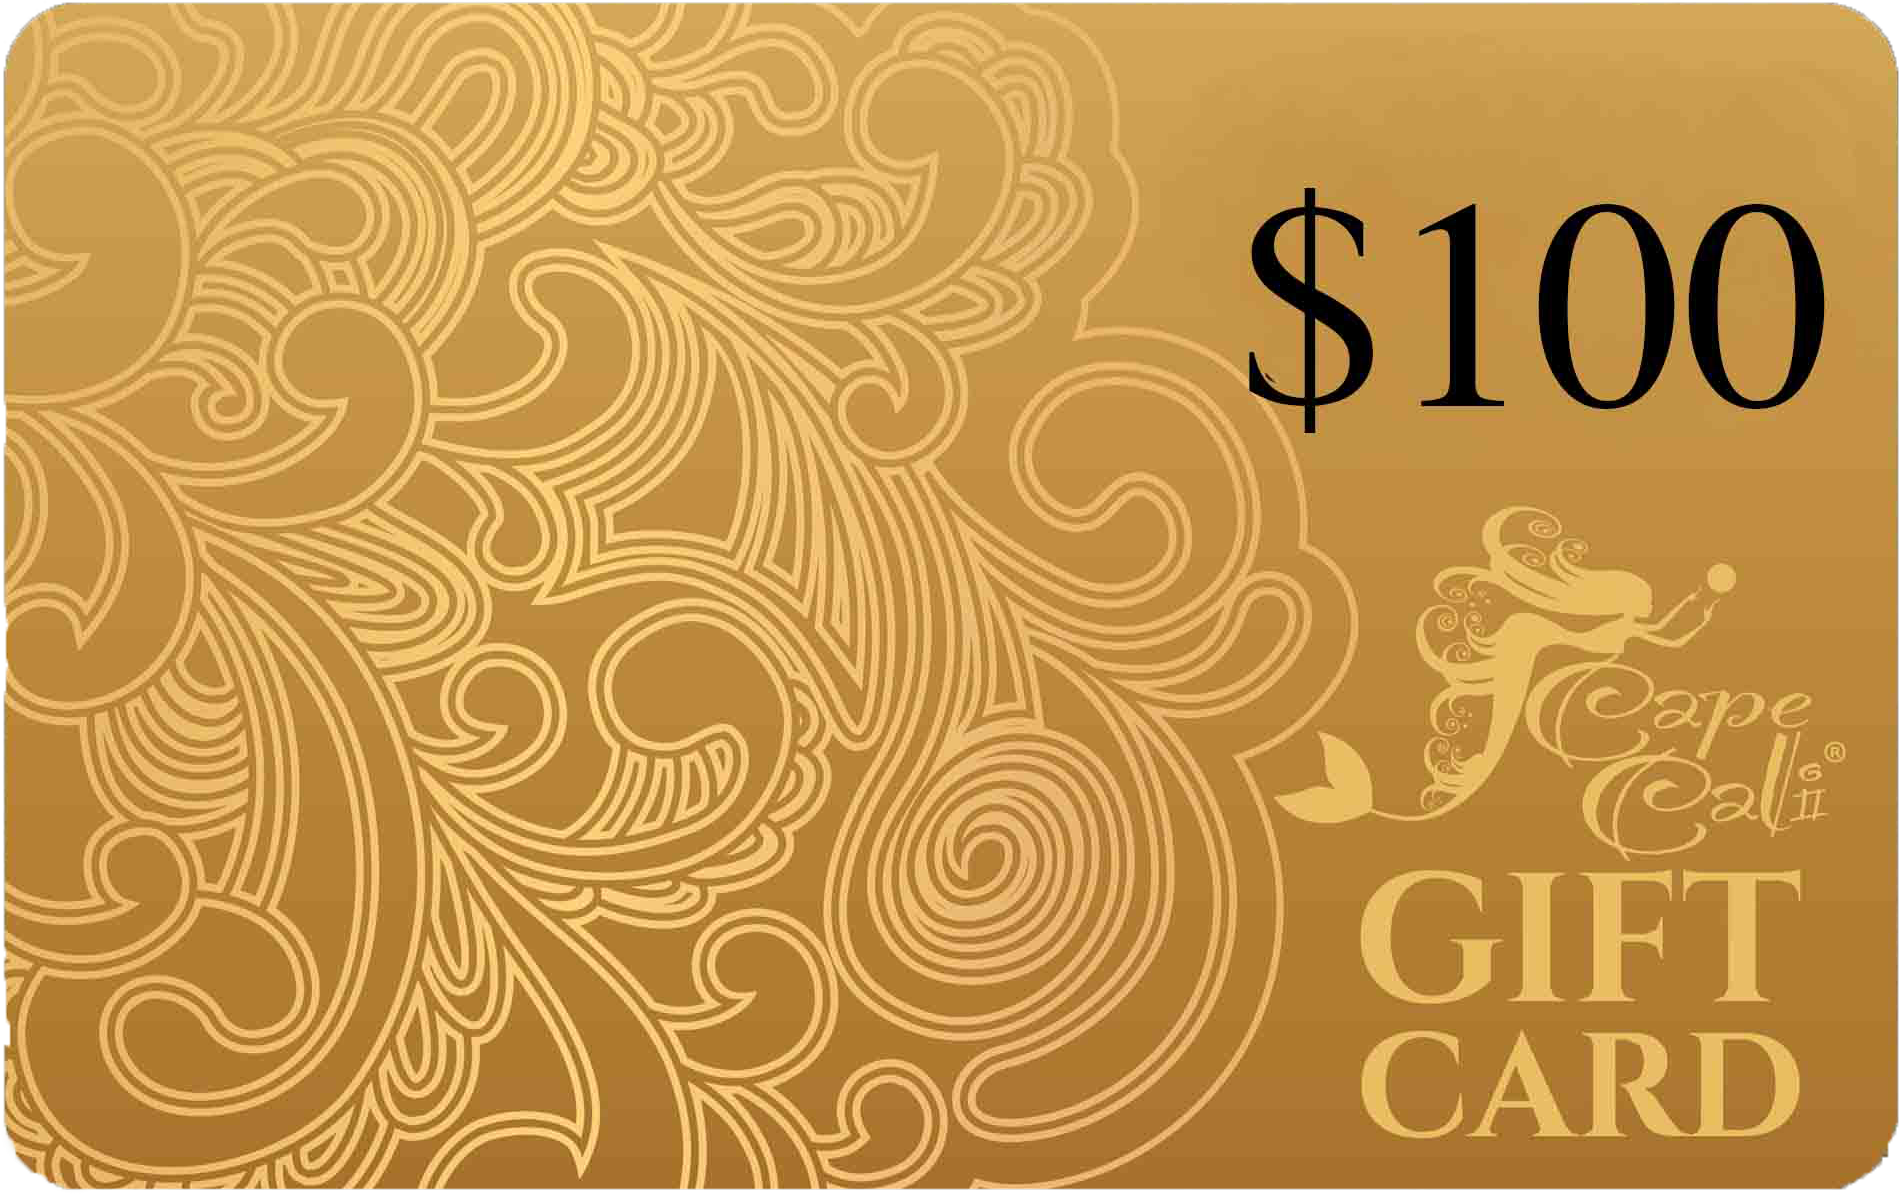 Cape Cali $100 Gift Card